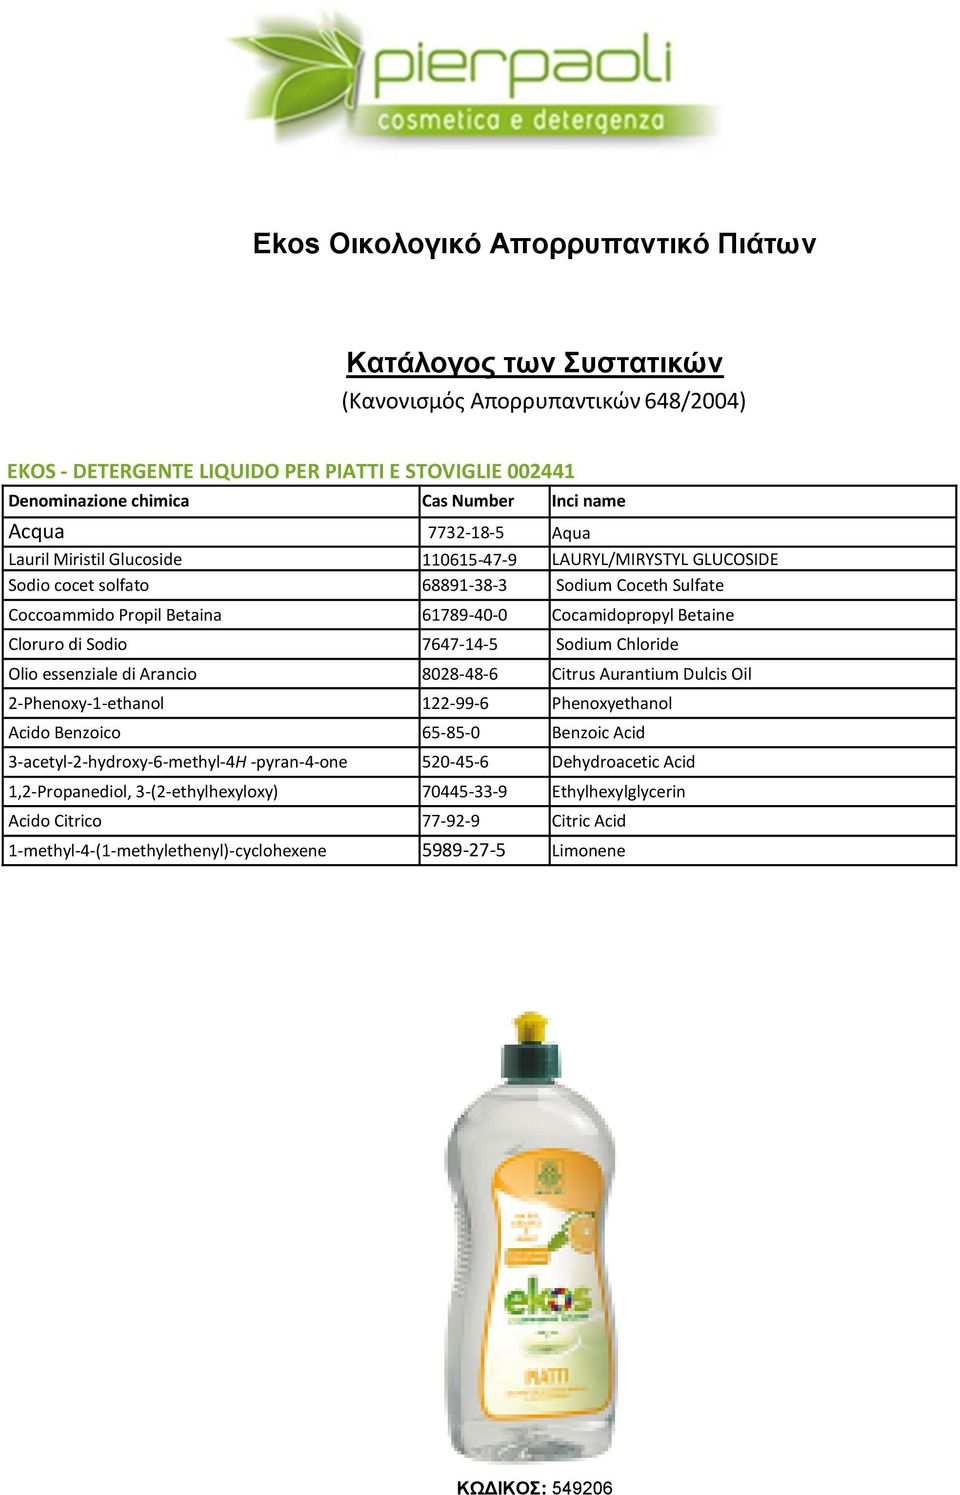 Cloruro di Sodio 7647-14-5 Sodium Chloride Olio essenziale di Arancio 8028-48-6 Citrus Aurantium Dulcis Oil 2-Phenoxy-1-ethanol 122-99-6 Phenoxyethanol Acido Benzoico 65-85-0 Benzoic Acid